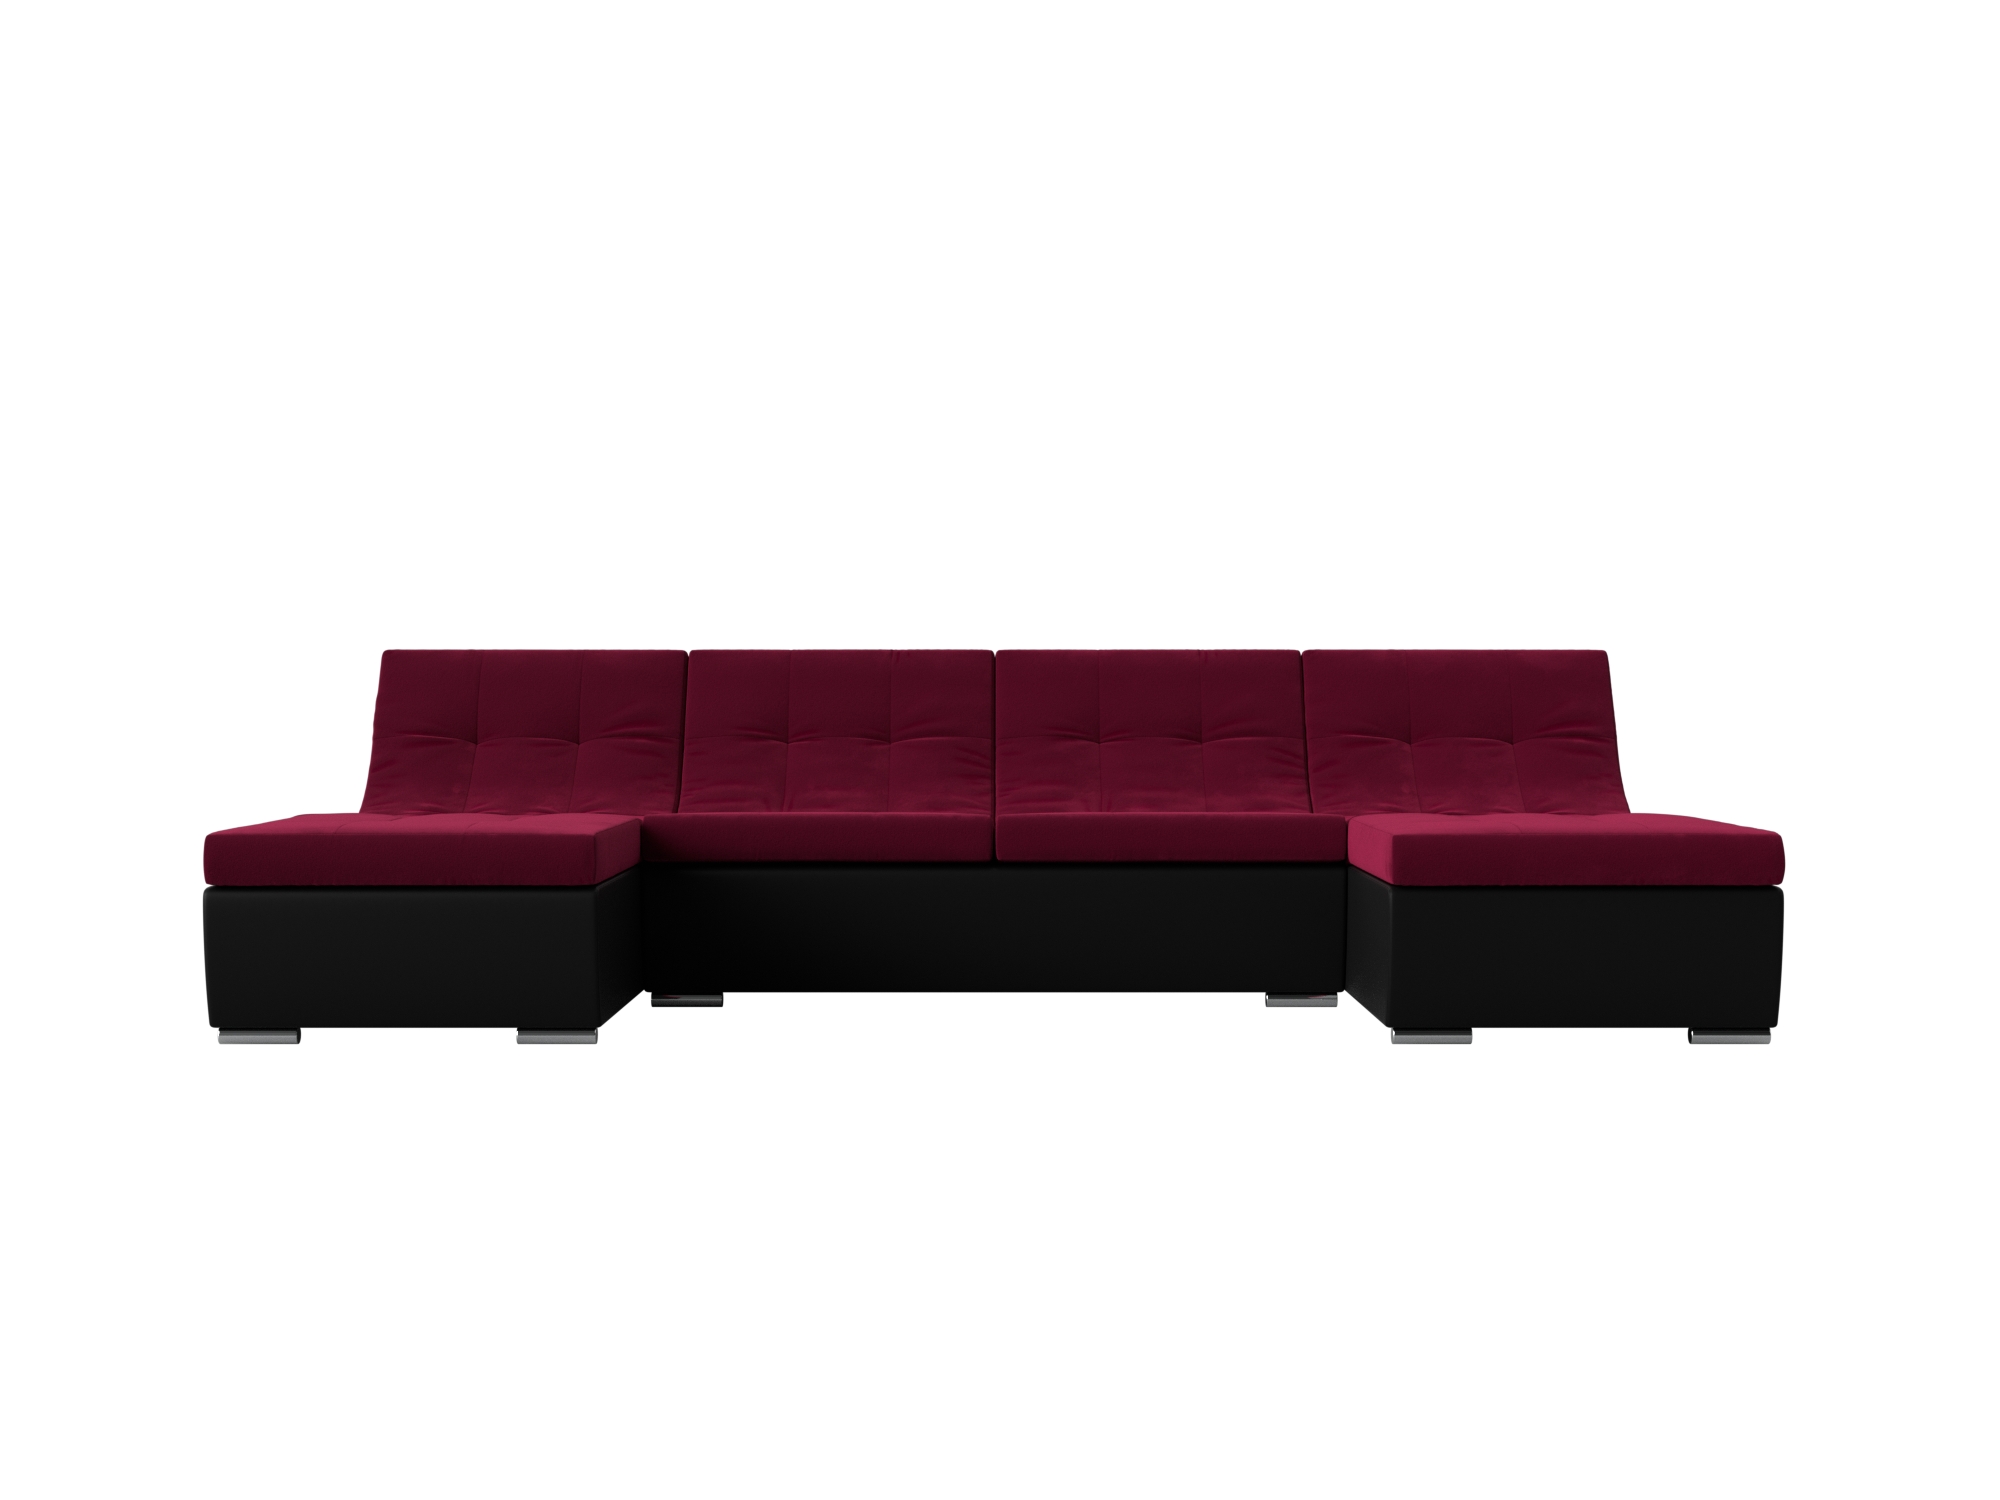 П-образный модульный диван Монреаль MebelVia Красный, Черный, Микровельвет, Экокожа, ЛДСП угловой модульный диван монреаль mebelvia фиолетовый черный микровельвет экокожа лдсп